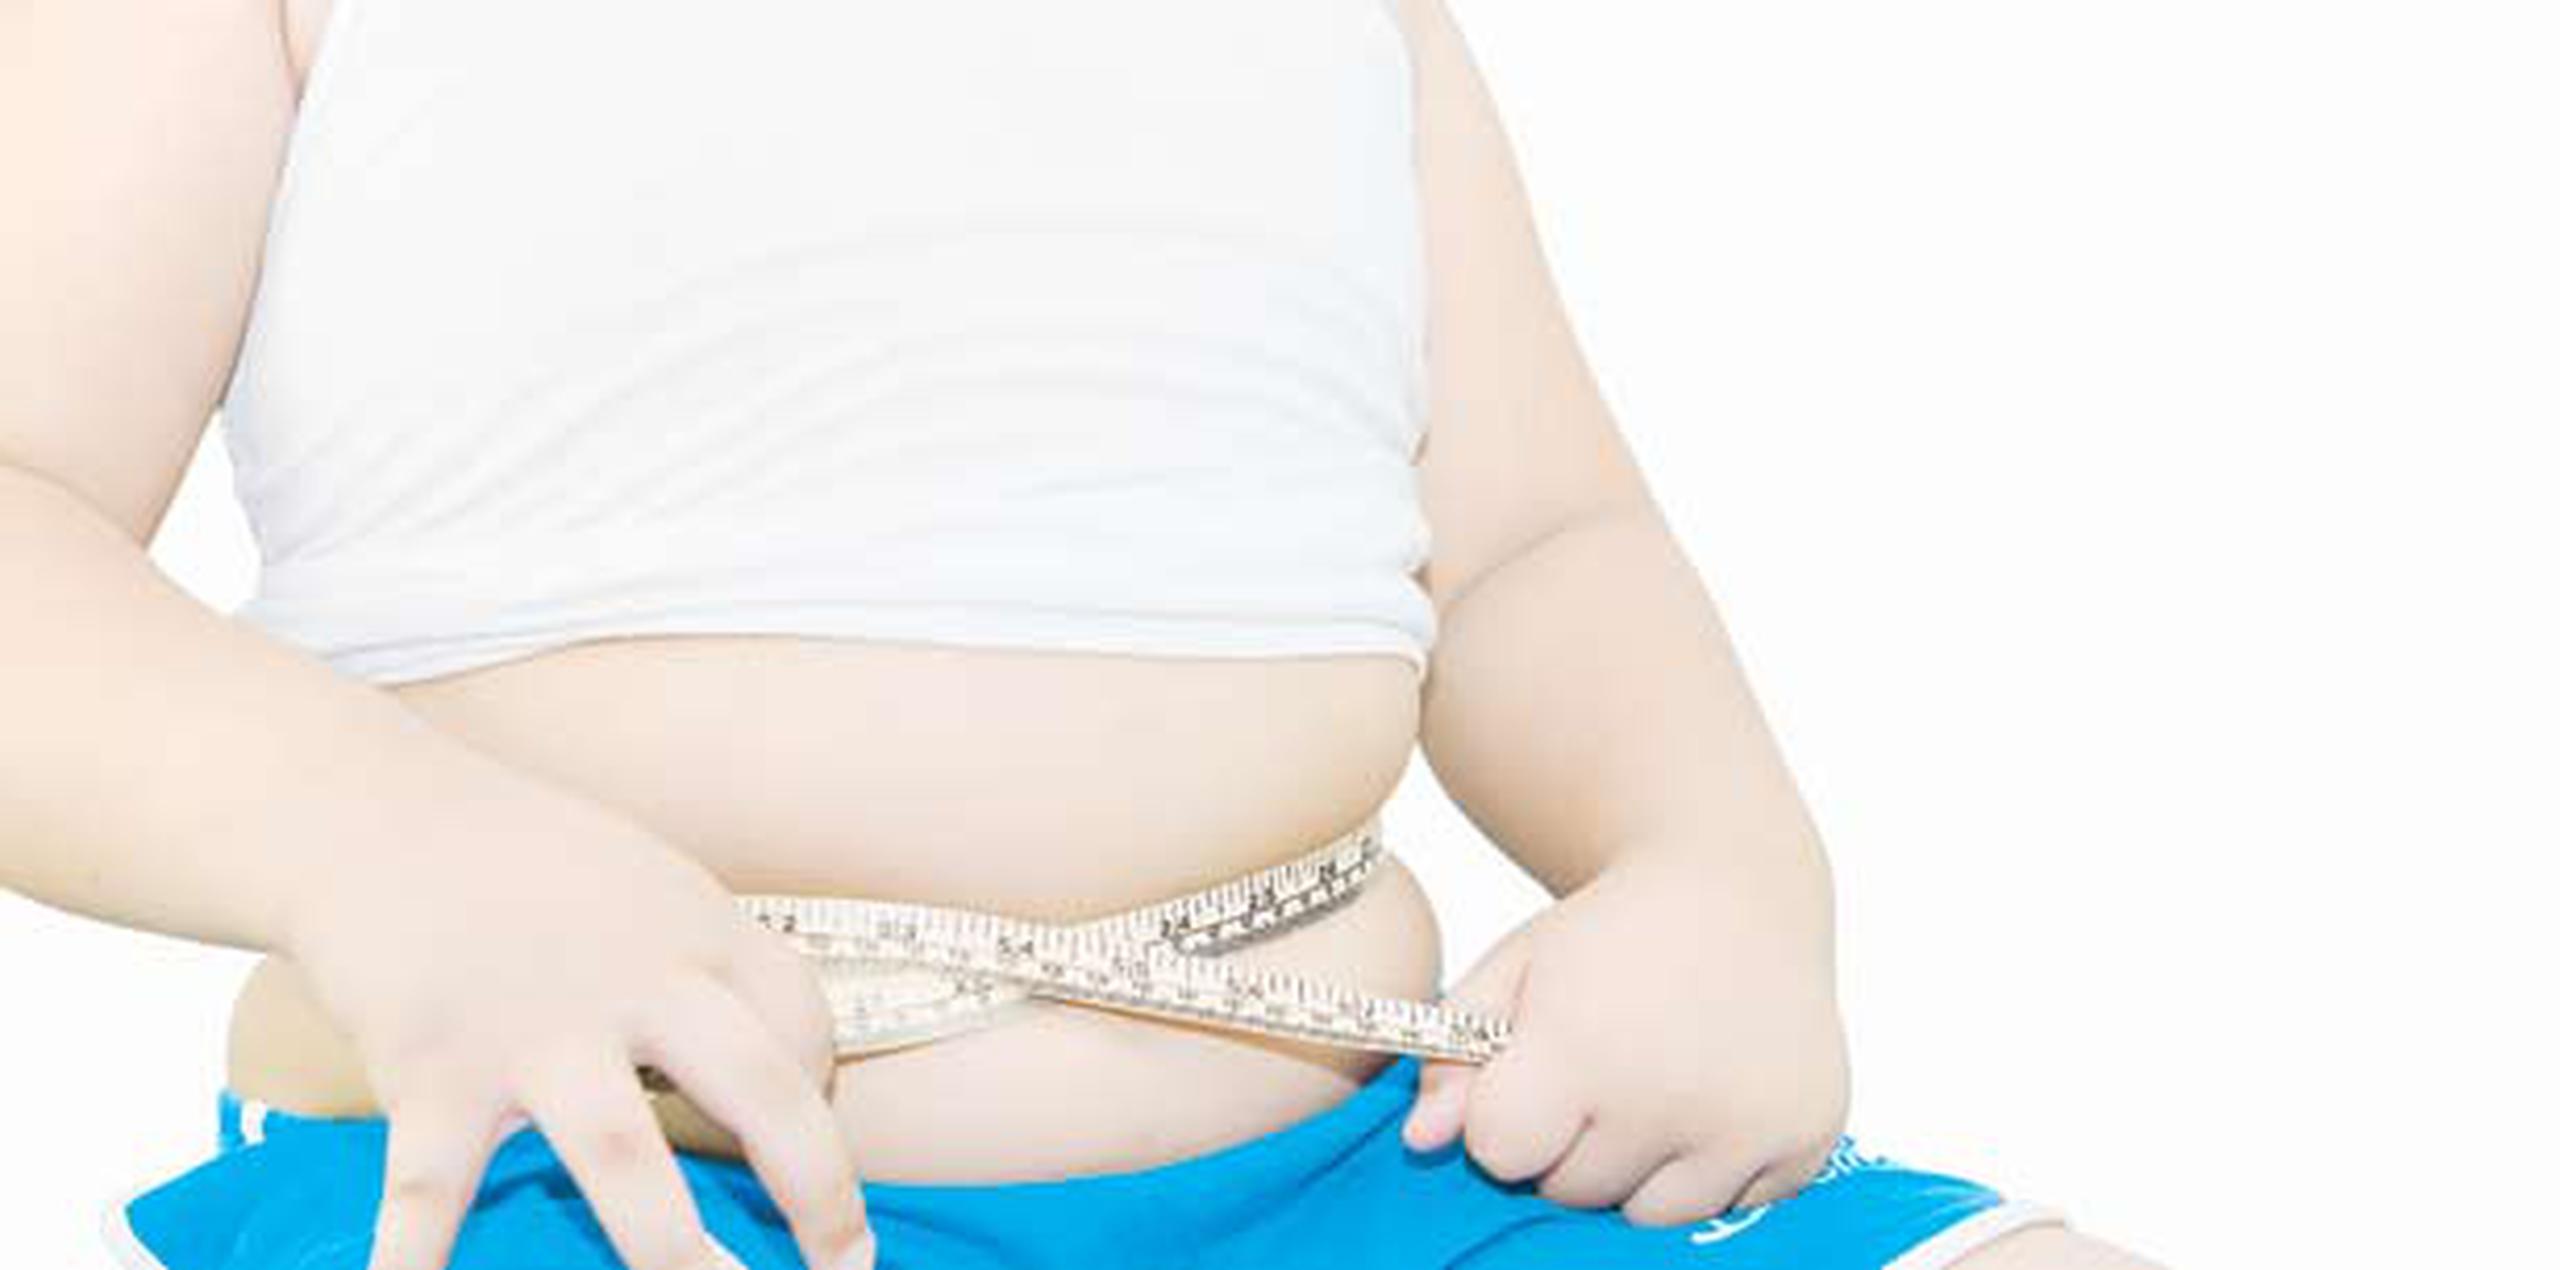 El 65.9% de las personas mayores de 18 años está obeso o en sobrepeso, lo que representa un serio problema de salud que debe ser corregido de inmediato, según expertos. (Archivo)